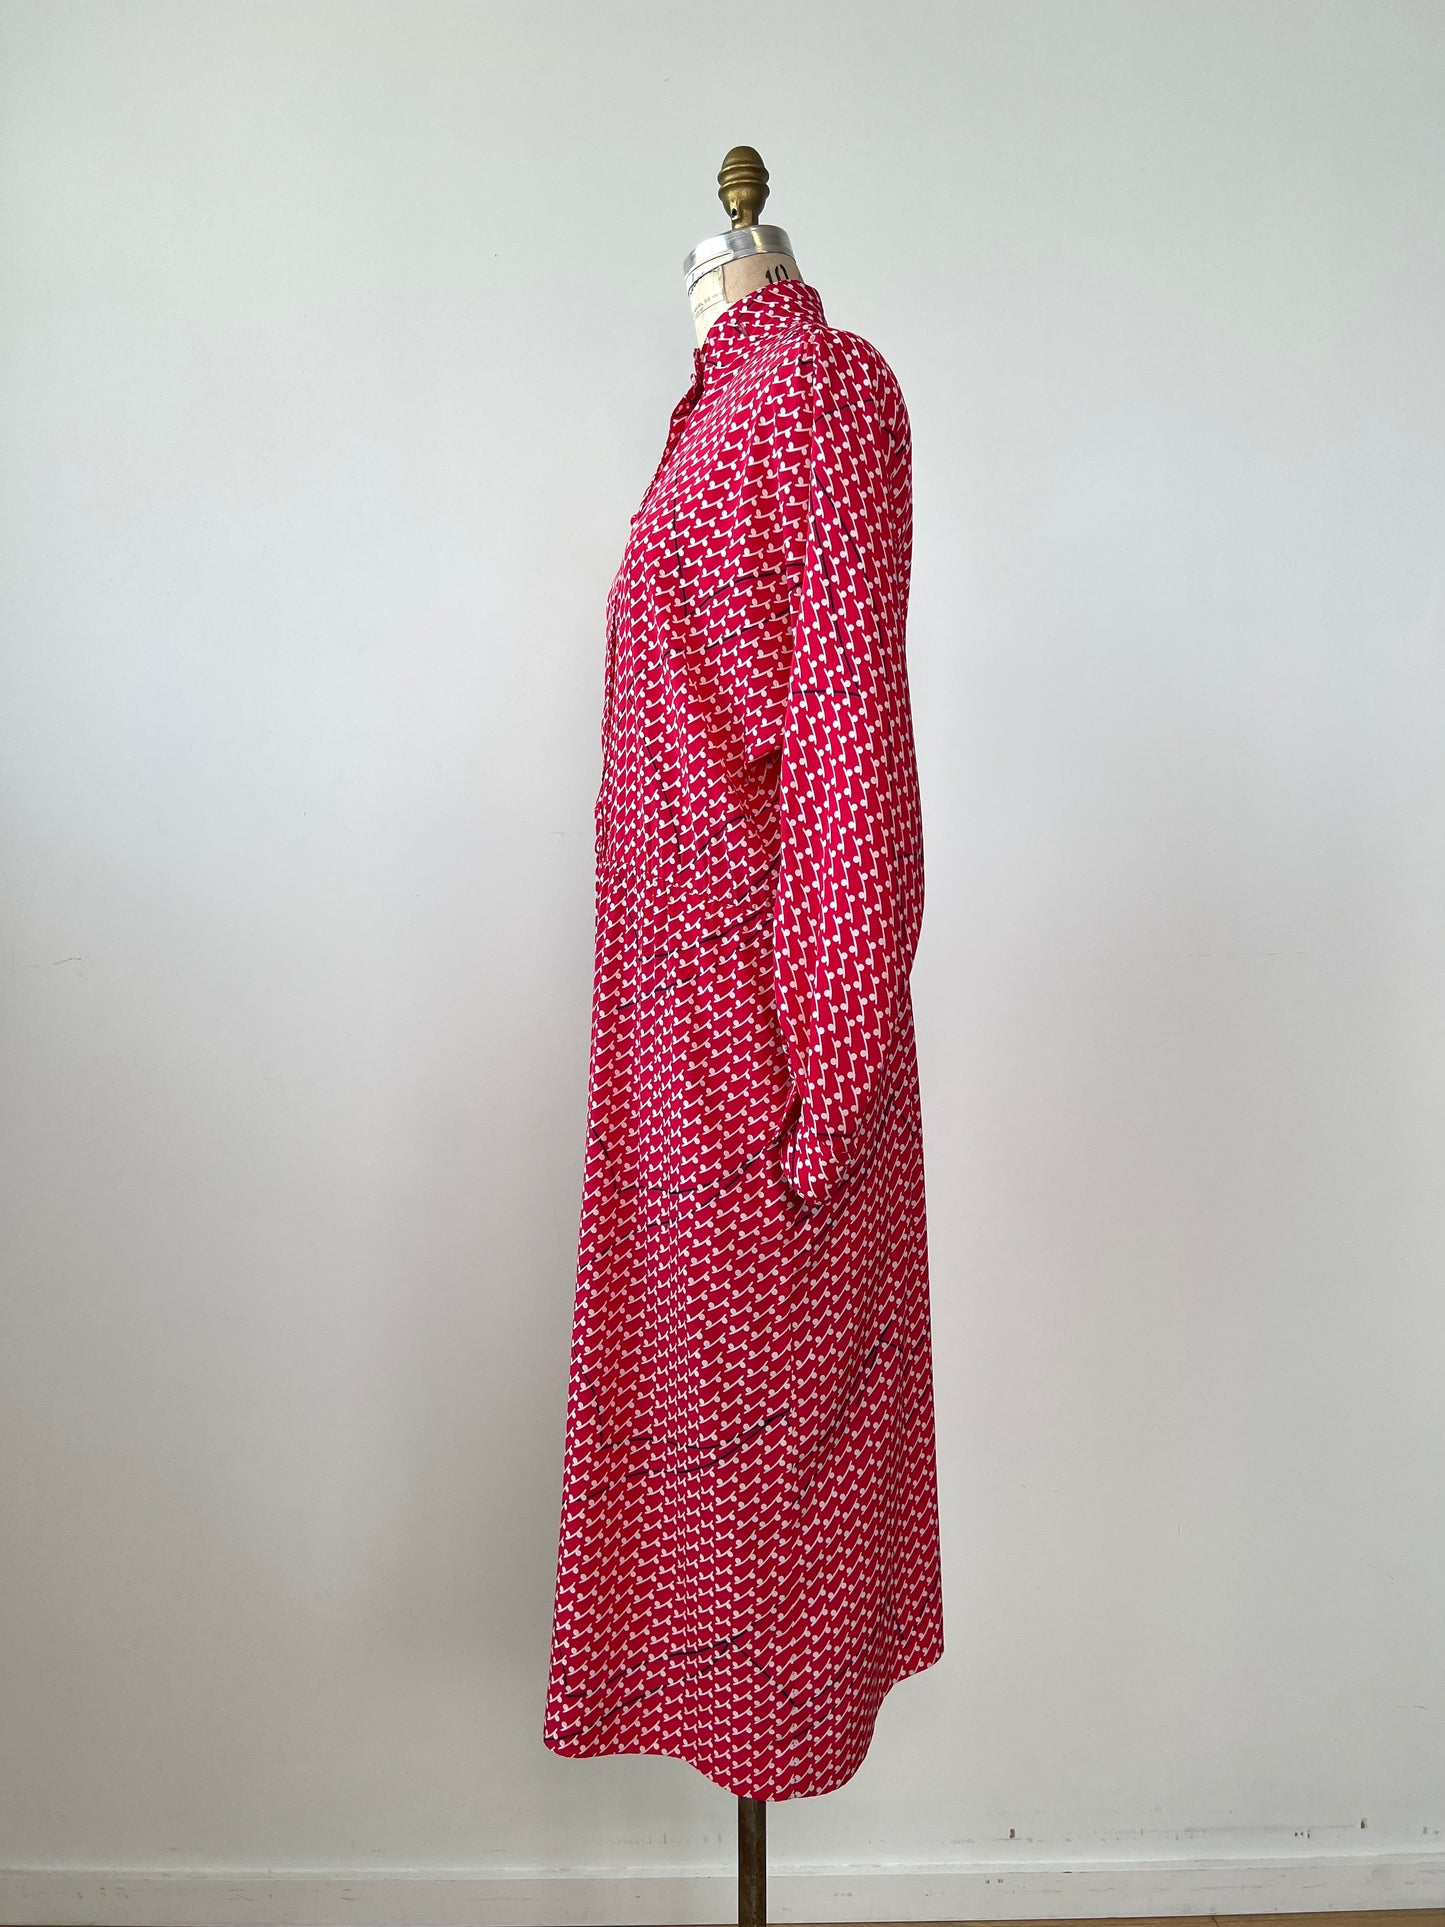 Robe vintage rose/rouge imprimée blanc et marine (14)